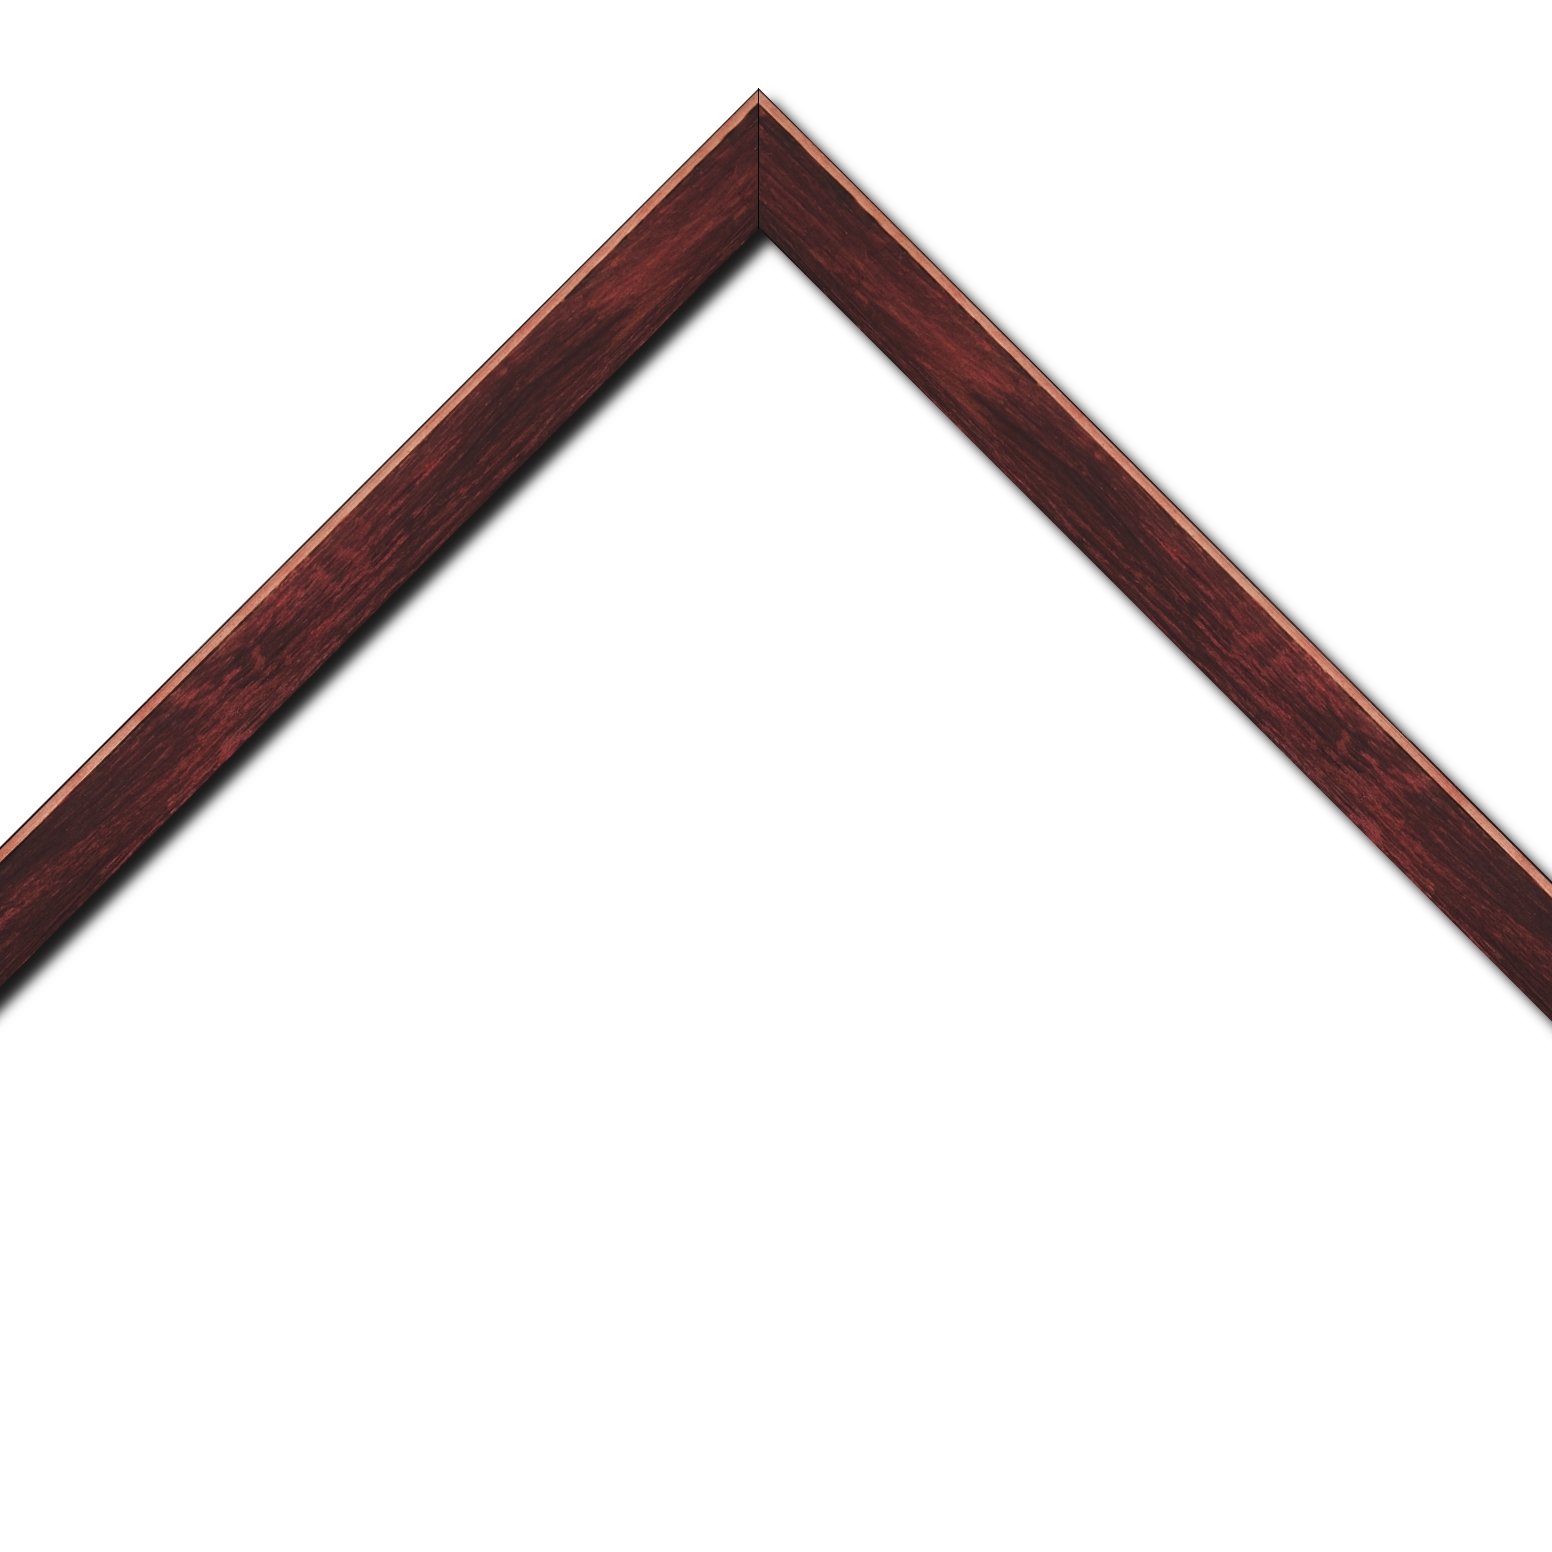 Baguette bois profil arrondi en pente plongeant largeur 2.4cm couleur bordeaux effet ressuyé, angle du cadre extérieur filet naturel